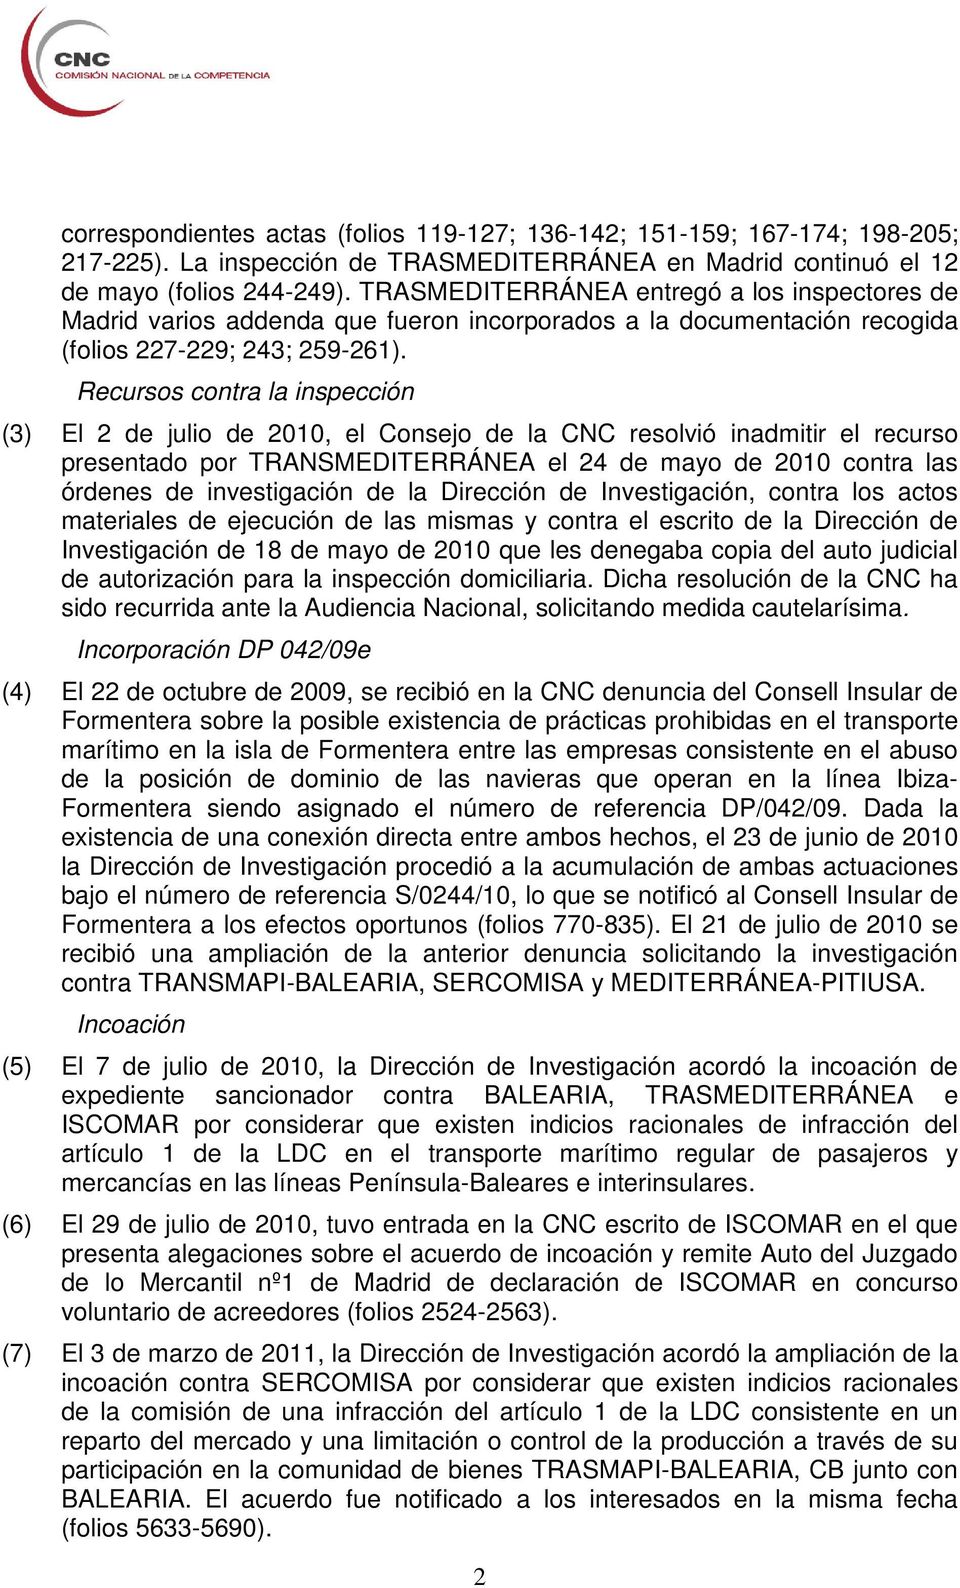 Recursos contra la inspección (3) El 2 de julio de 2010, el Consejo de la CNC resolvió inadmitir el recurso presentado por TRANSMEDITERRÁNEA el 24 de mayo de 2010 contra las órdenes de investigación